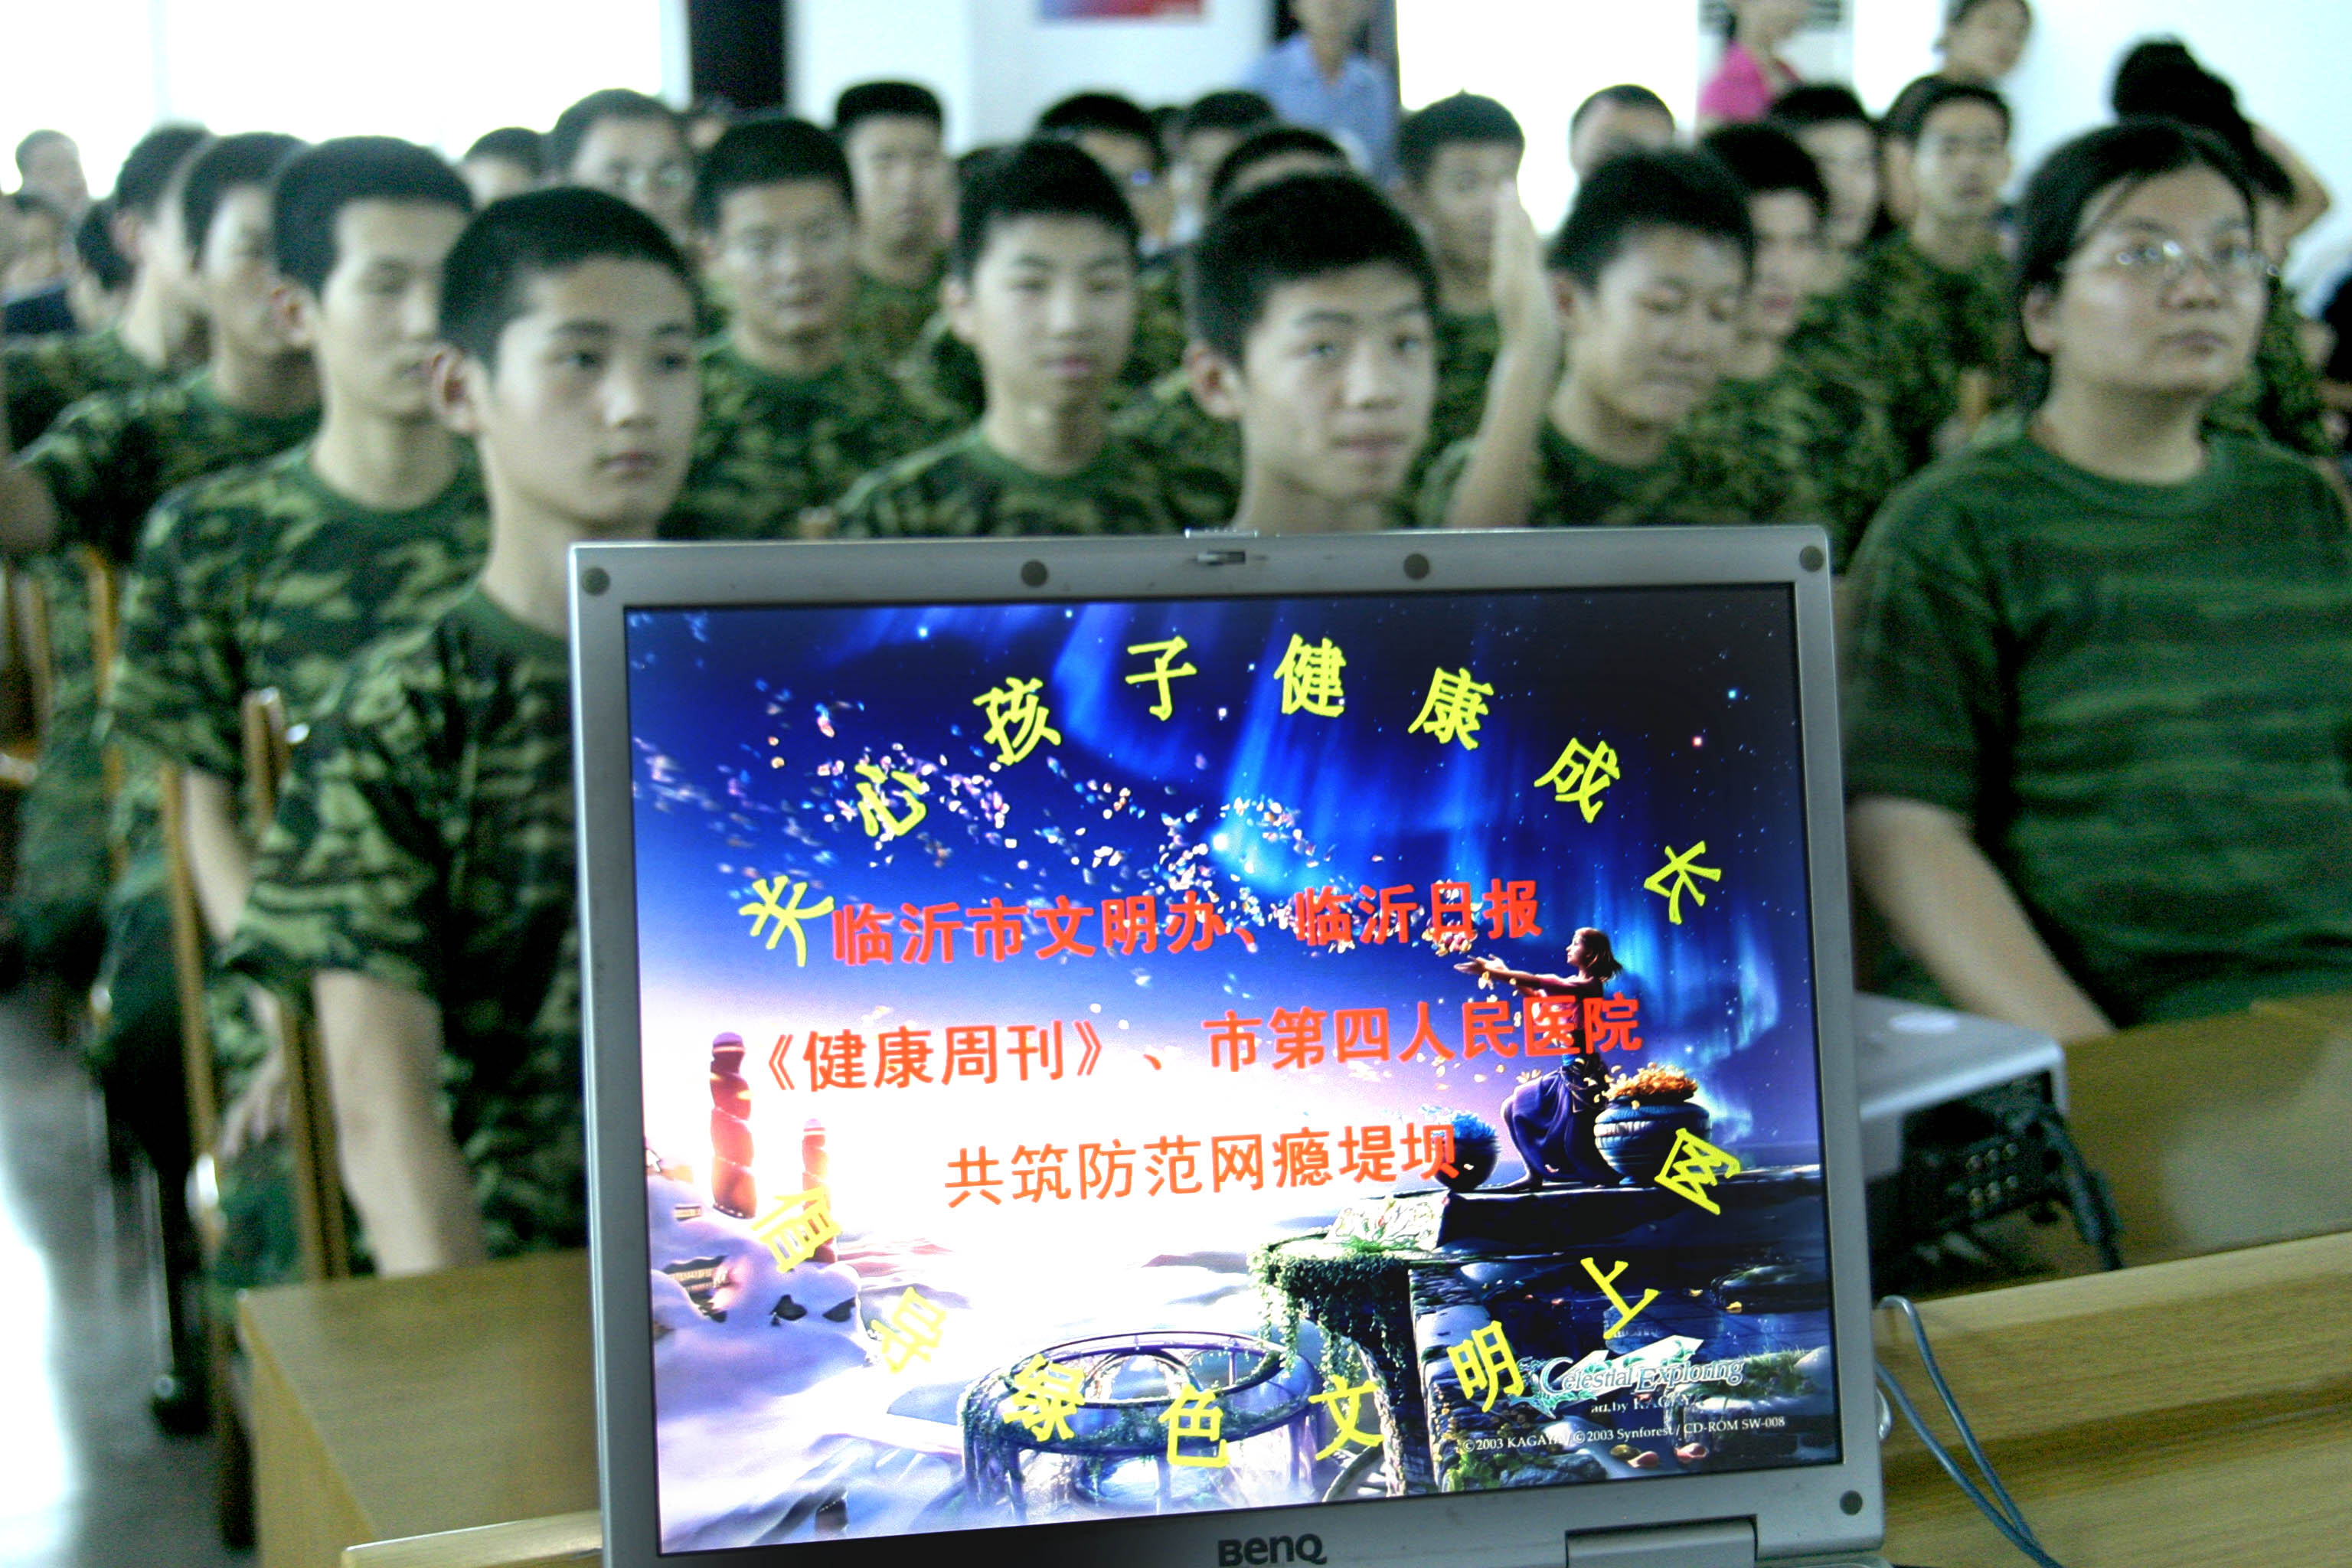 Minden jel szerint agyonverték az internetes átnevelőtáborba küldött kínai kamaszt